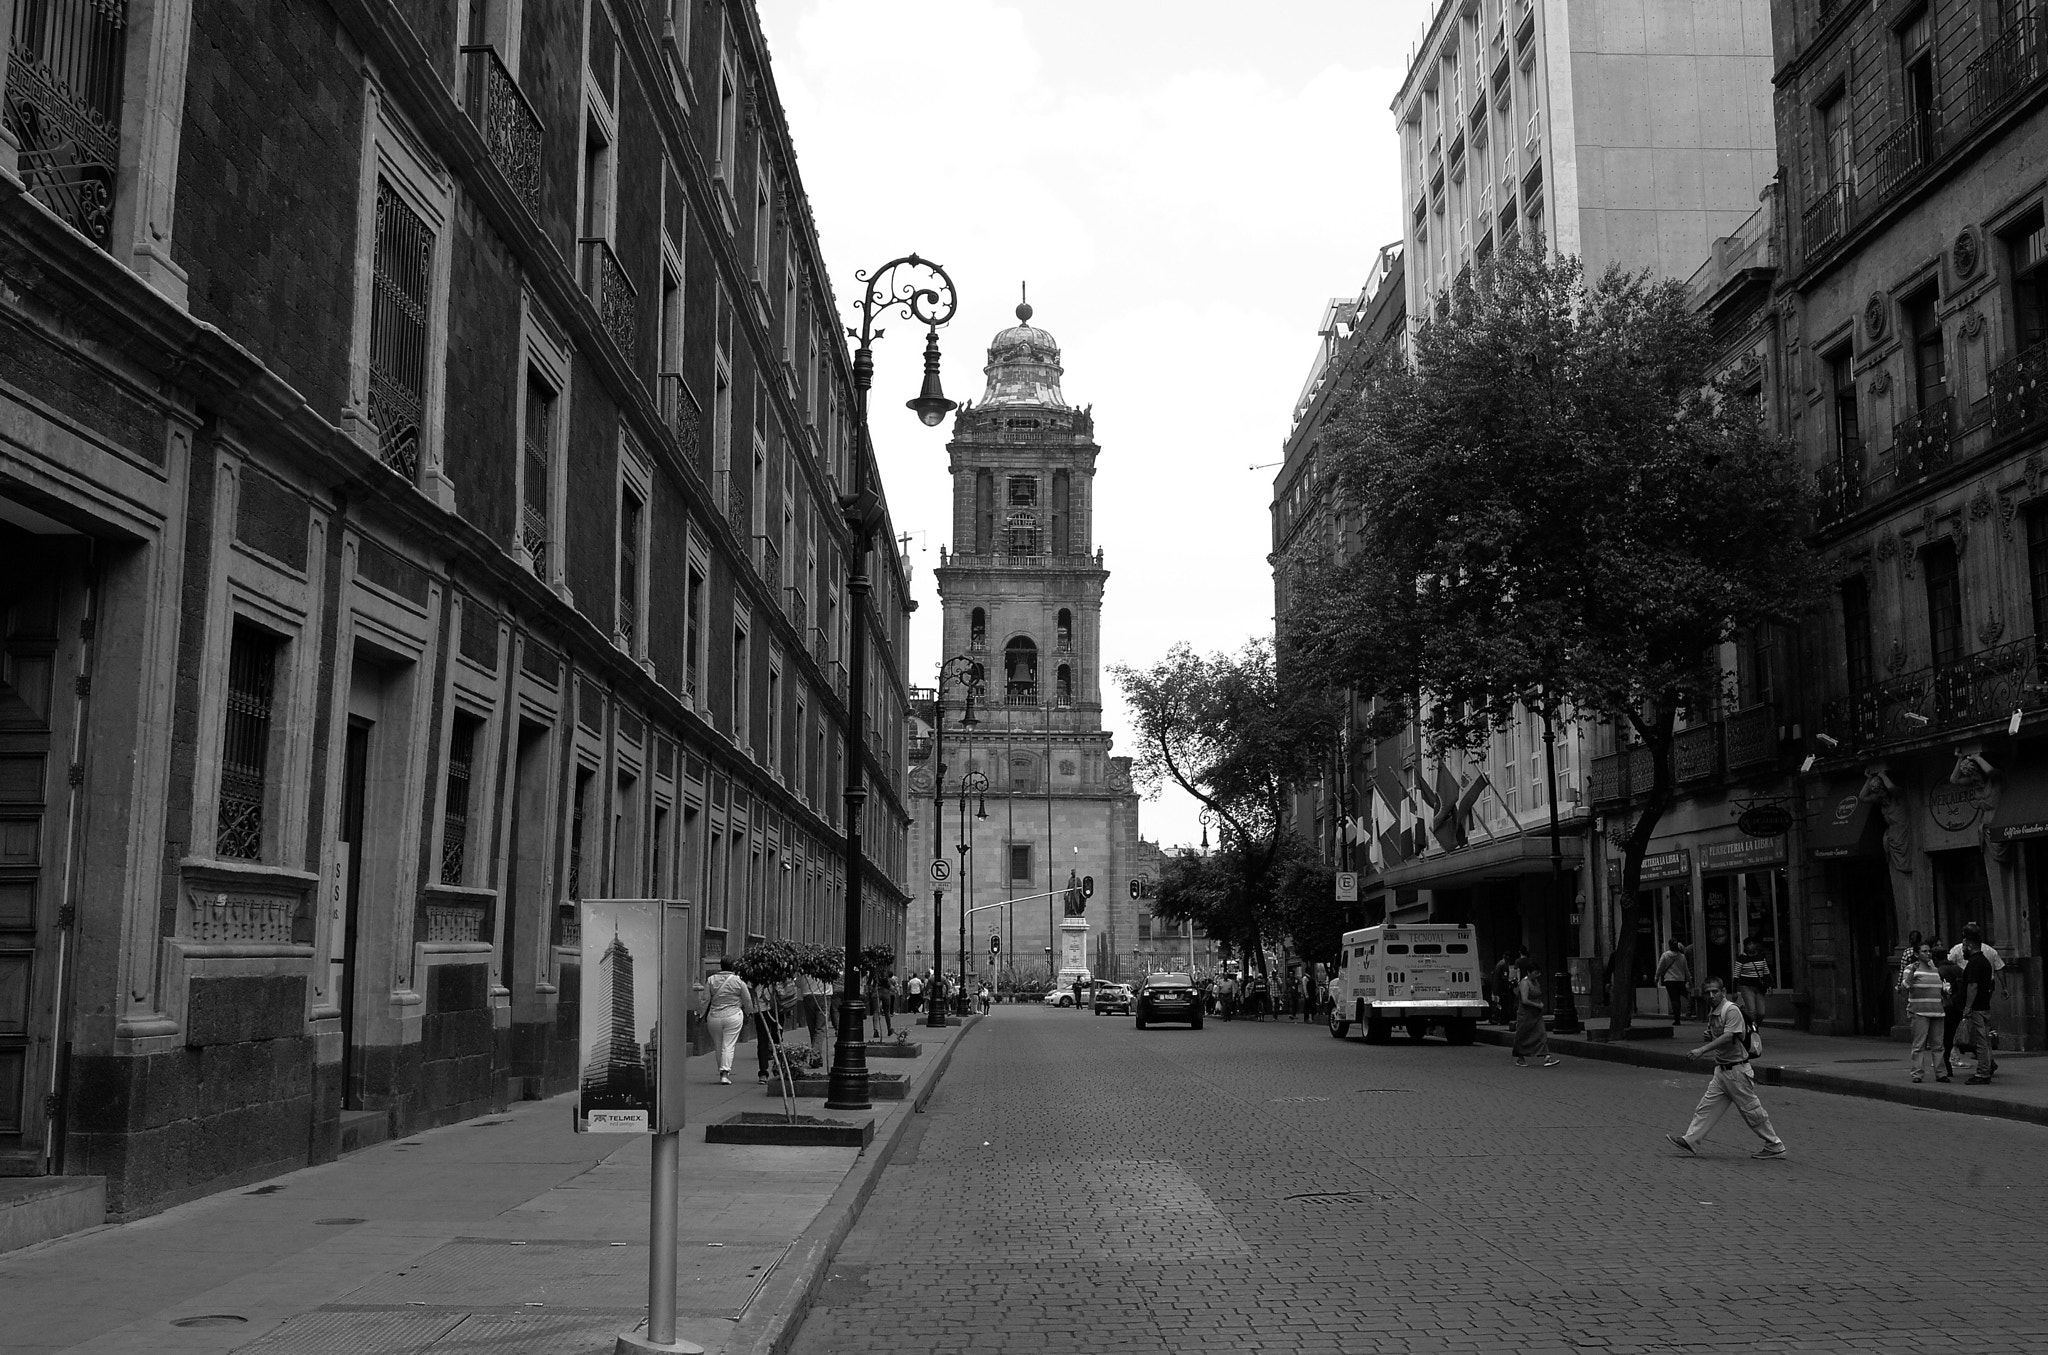 Leica X2 sample photo. Mexico city metropolitan cathedral photography